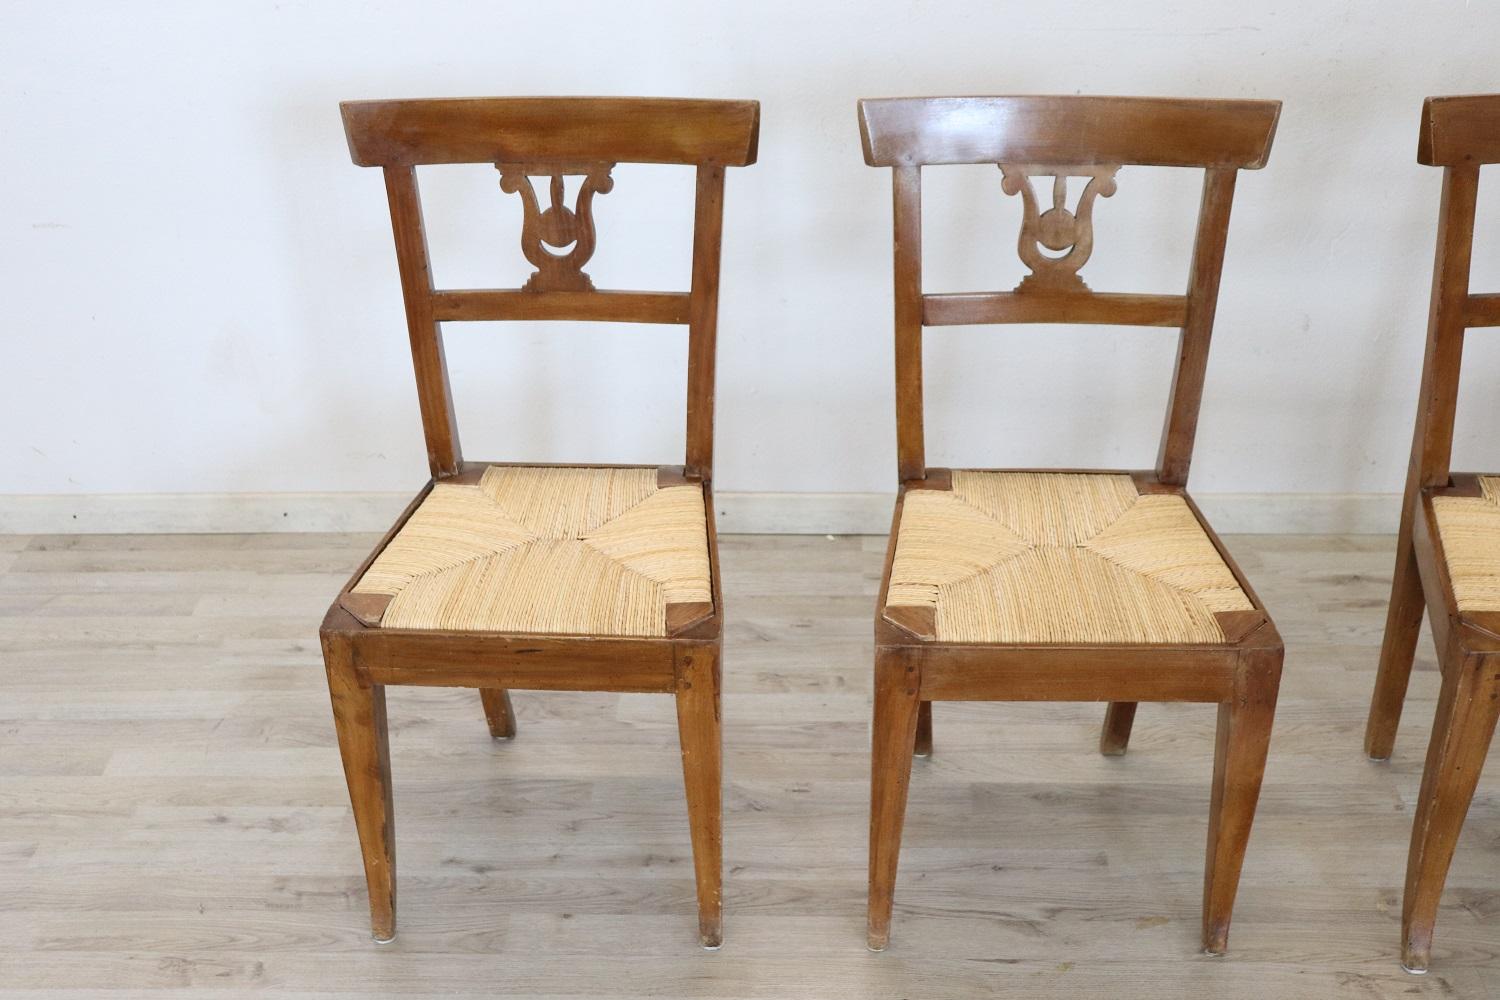 Série de quatre chaises raffinées en bois de noyer Empire italien authentique du début du XIXe siècle. Décoration raffinée : le dos est sculpté en forme de lyre. Les jambes sont très élégantes et droites. Le siège est large et confortable rustique